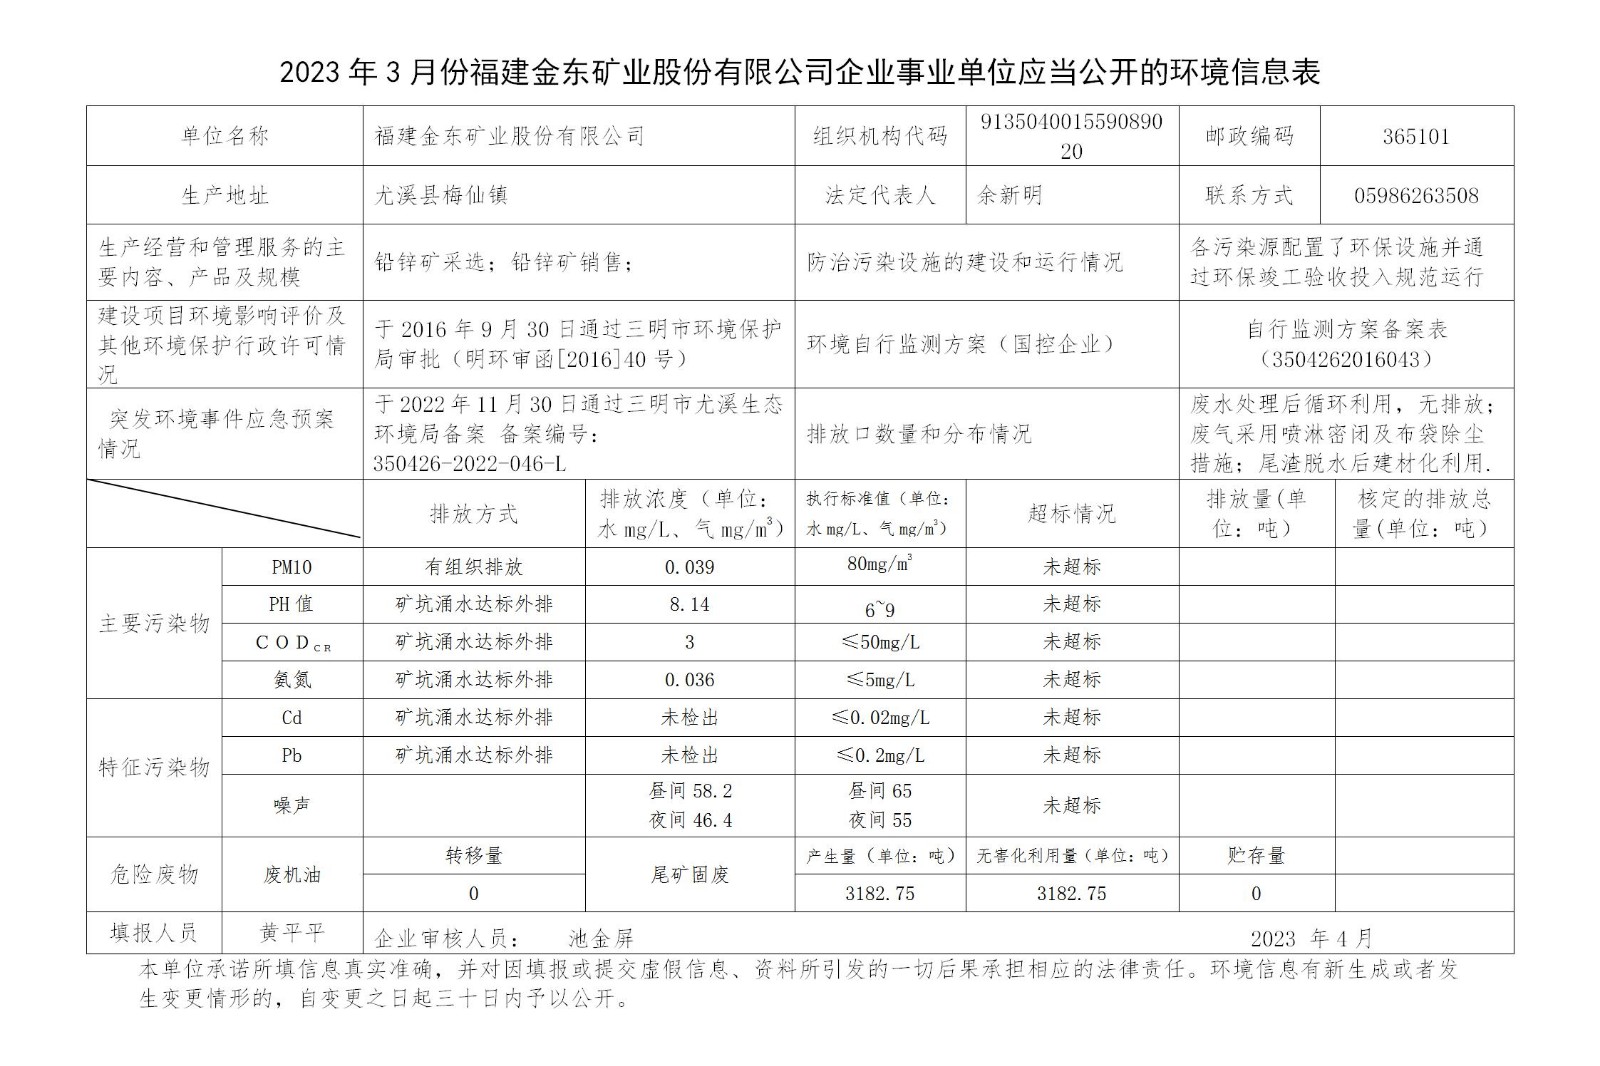 2023年3月份开元体育(中国)管理有限公司官网企业事业单位应当公开的环境信息表_01.jpg